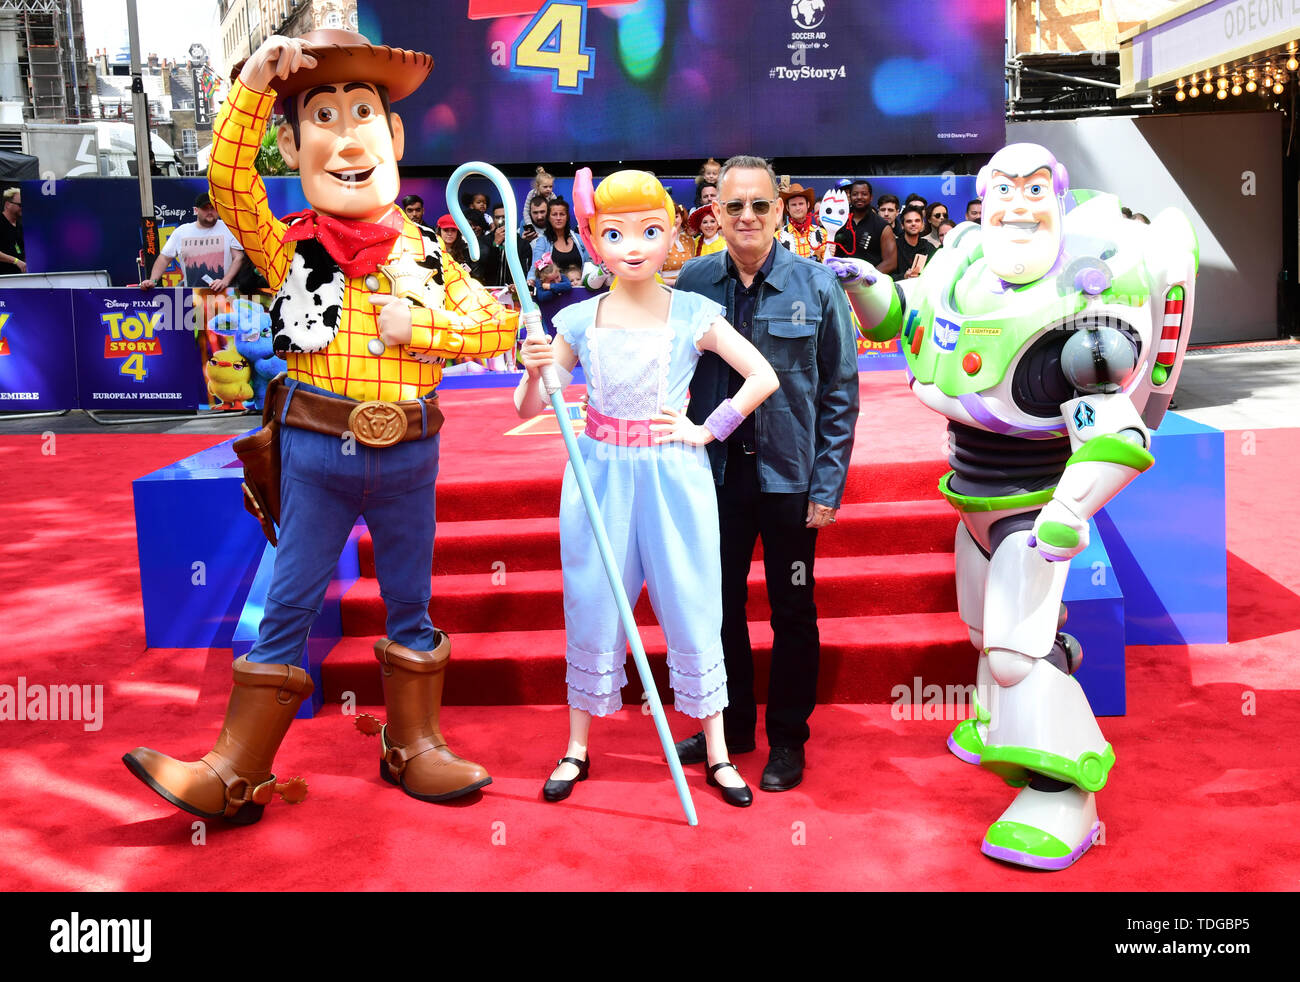 Posa con Tom Hanks Toy Story personajes durante el estreno de Toy Story 4 De Luxe, Odeon de Leicester Square, Londres. Foto de stock